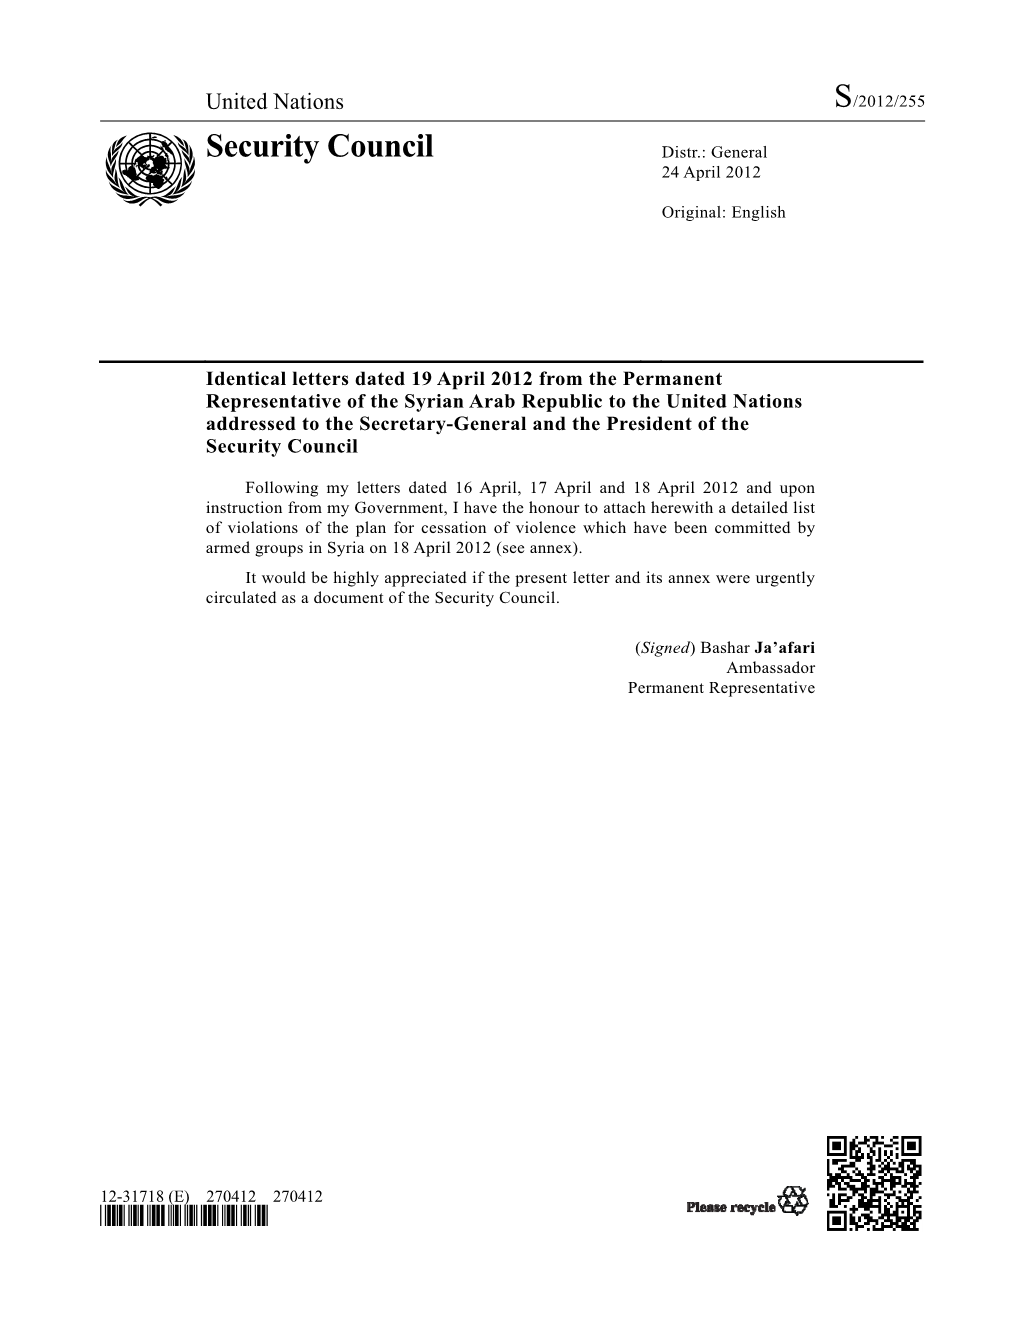 Security Council Distr.: General 24 April 2012